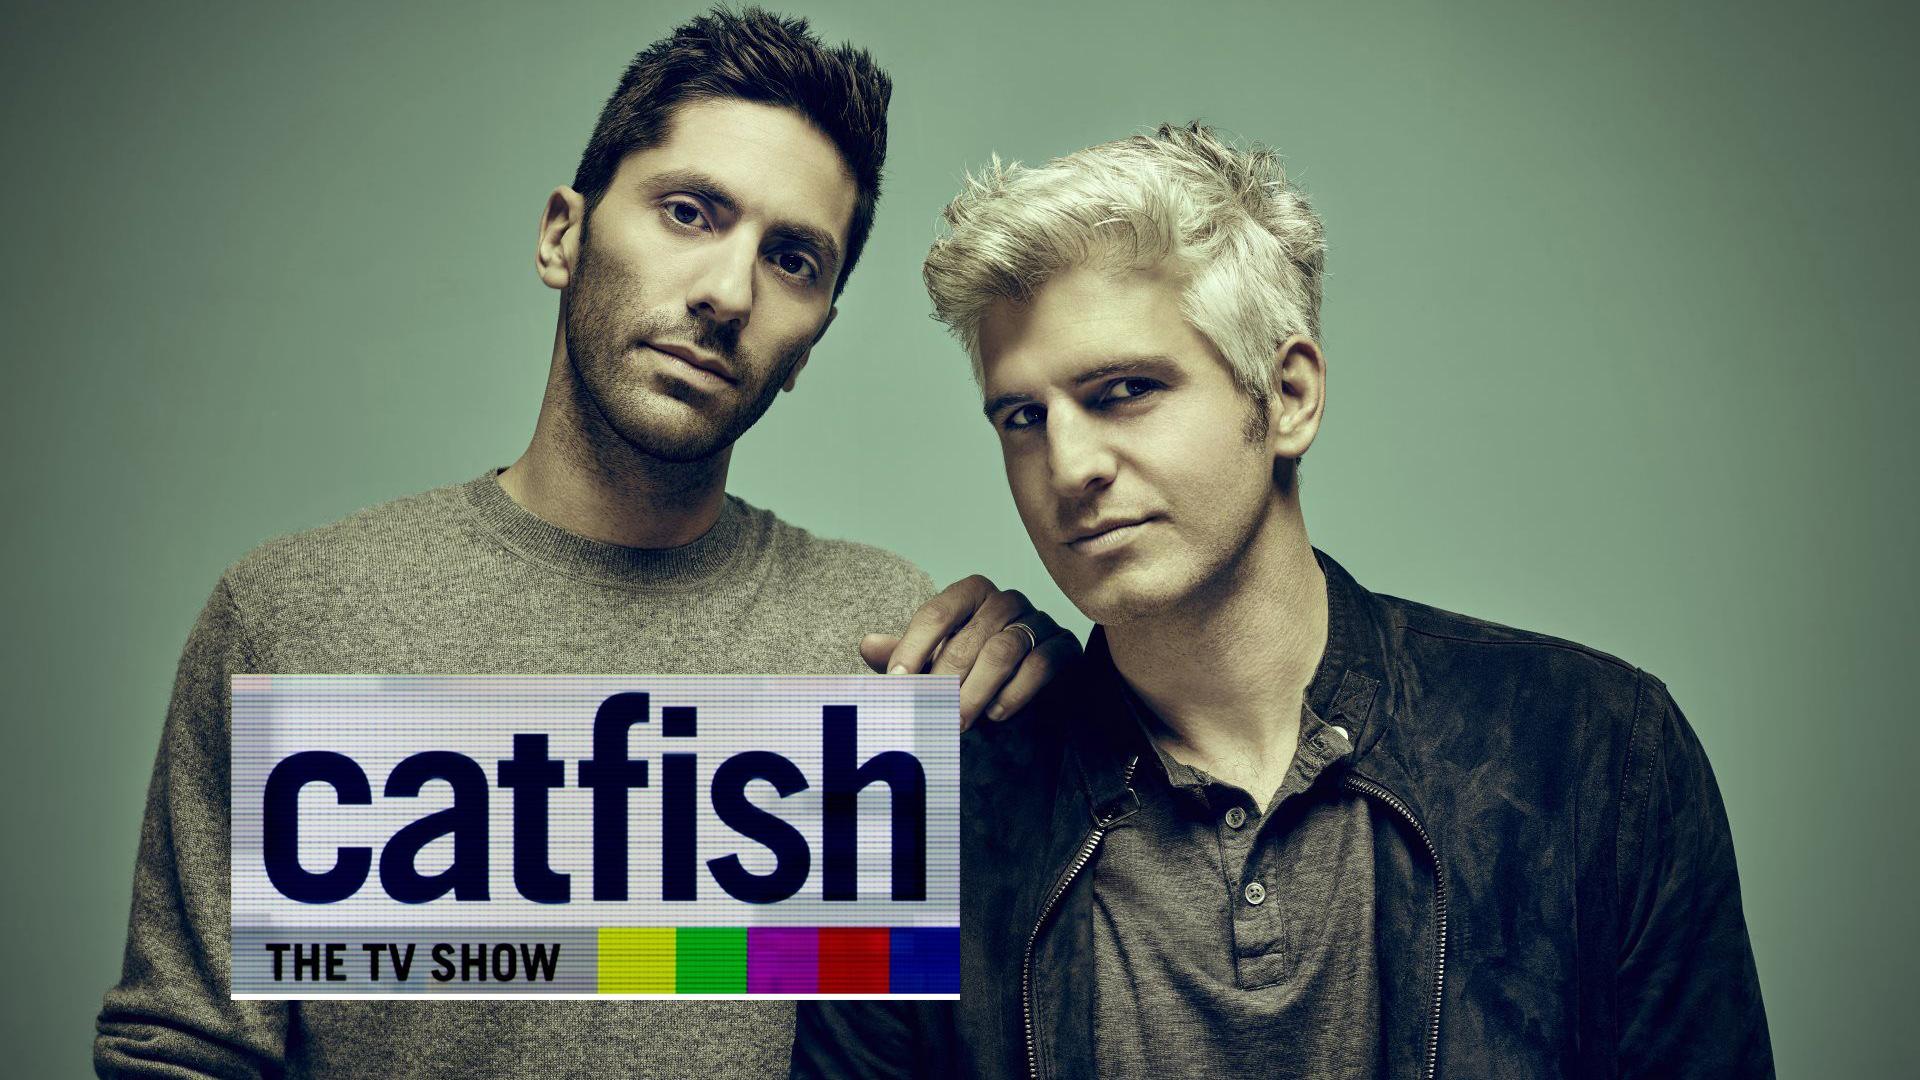 Catfish The TV Show • Kausi 7 • 1 Catfish The TV Show Ruutu